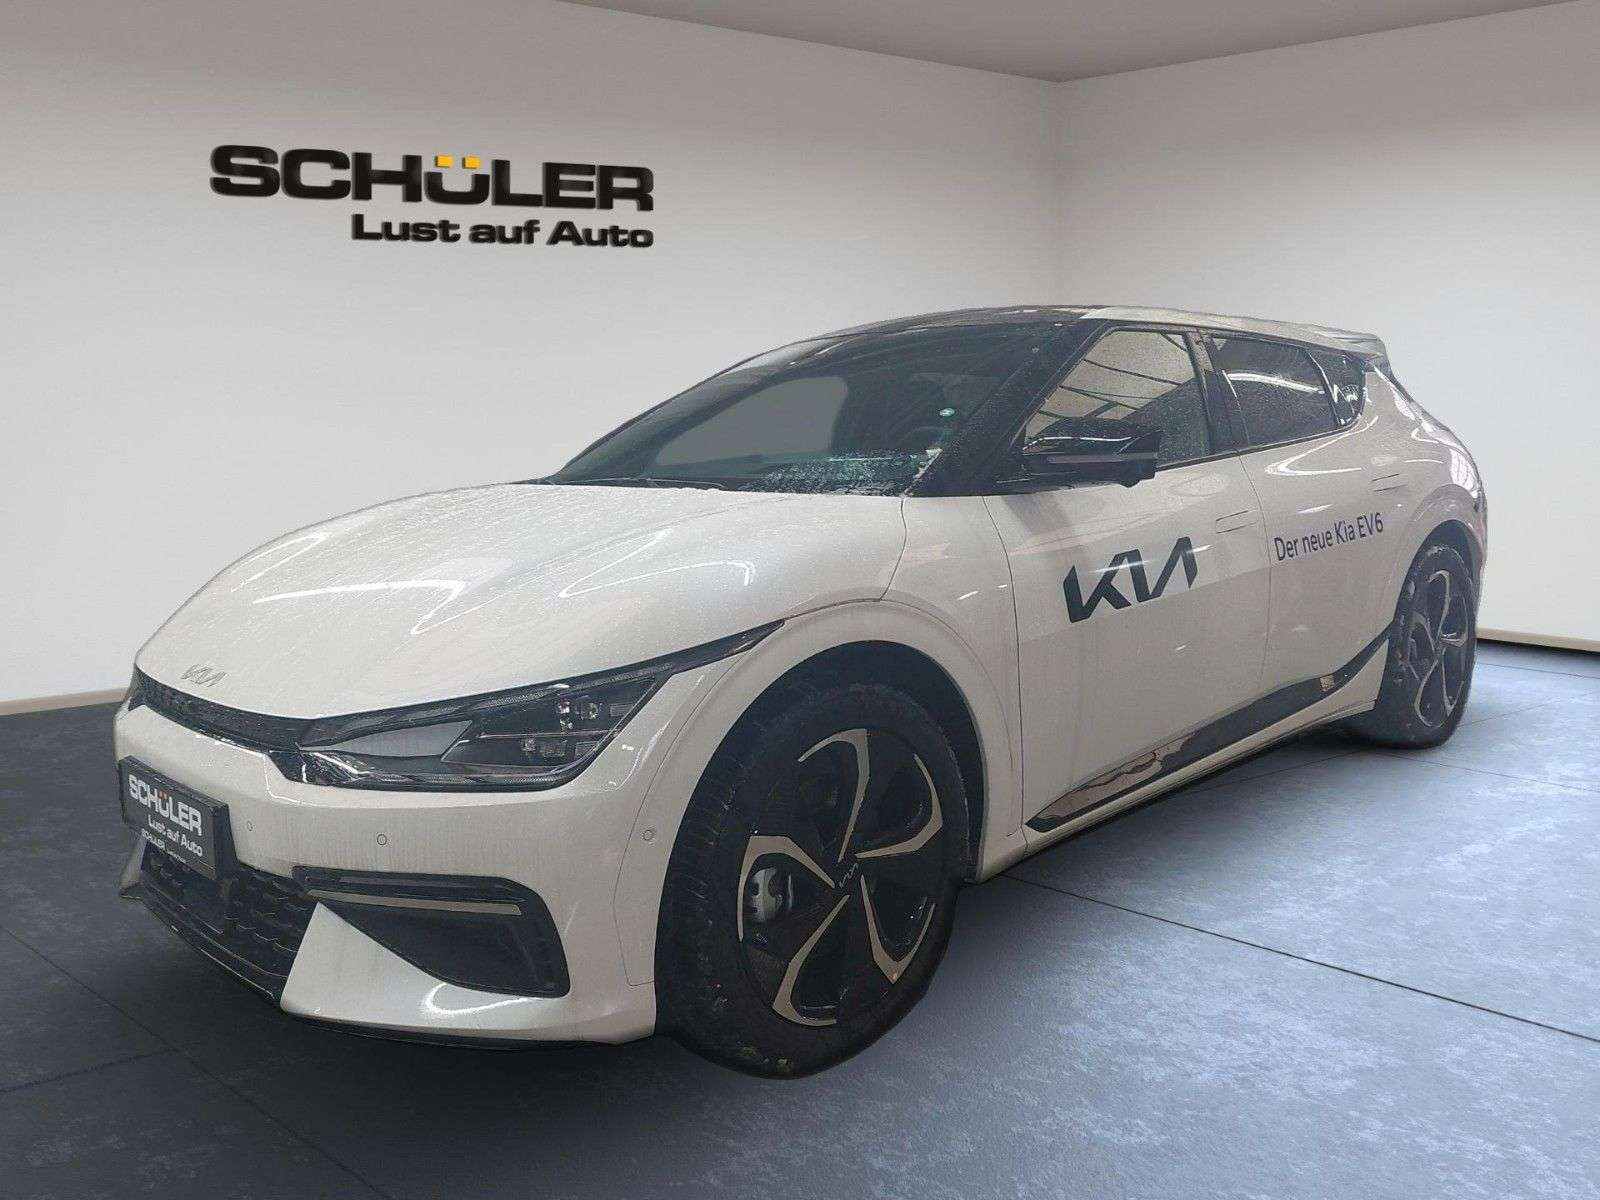 Kia EV6 Sedan in White new in Haiger for € 61,300.-